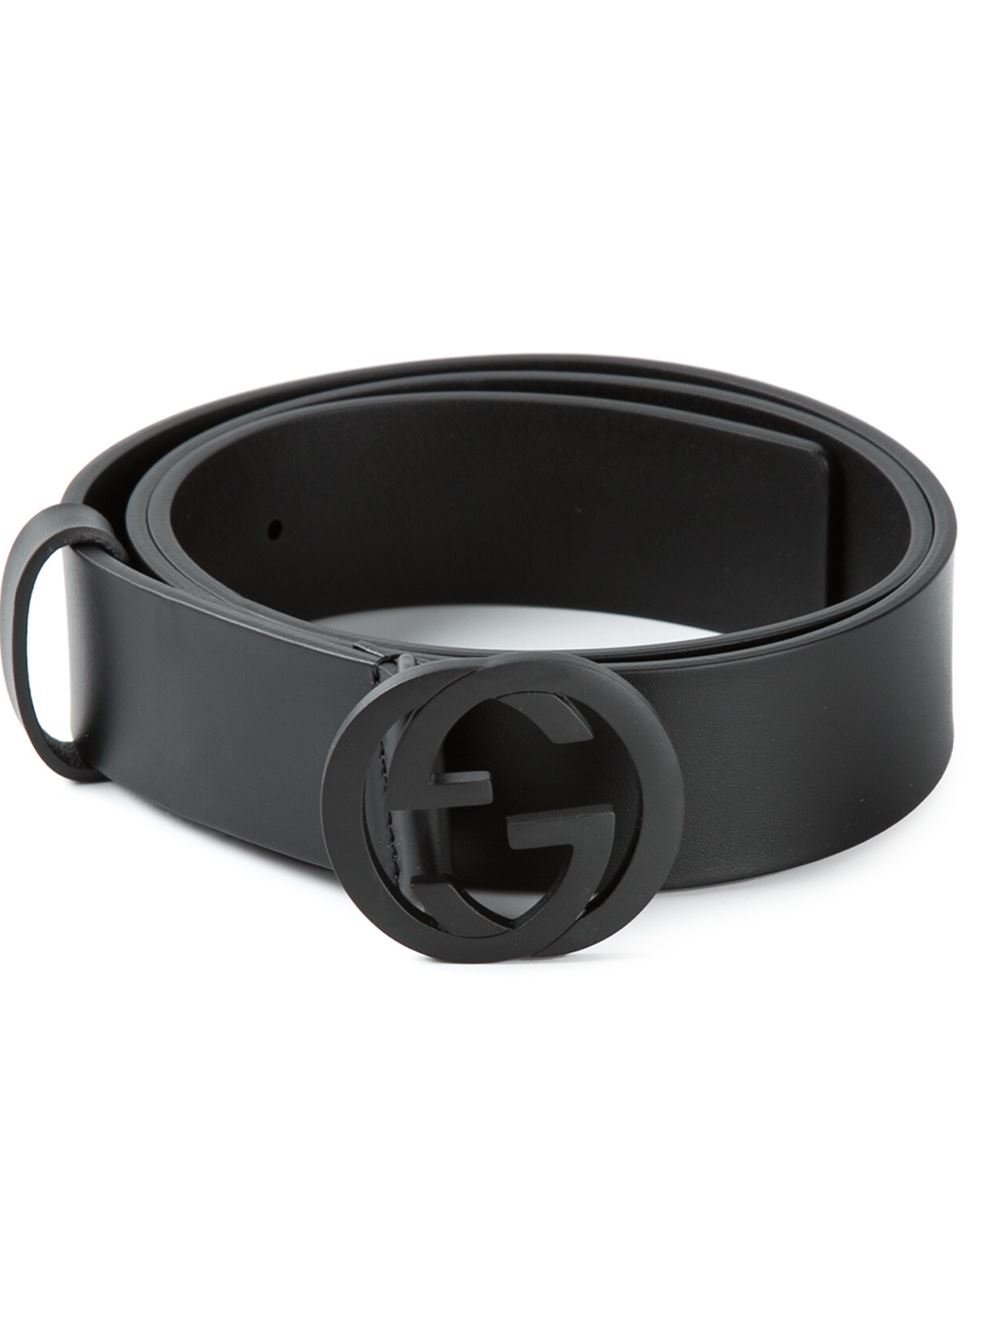 Lyst - Gucci Logo Belt in Black for Men